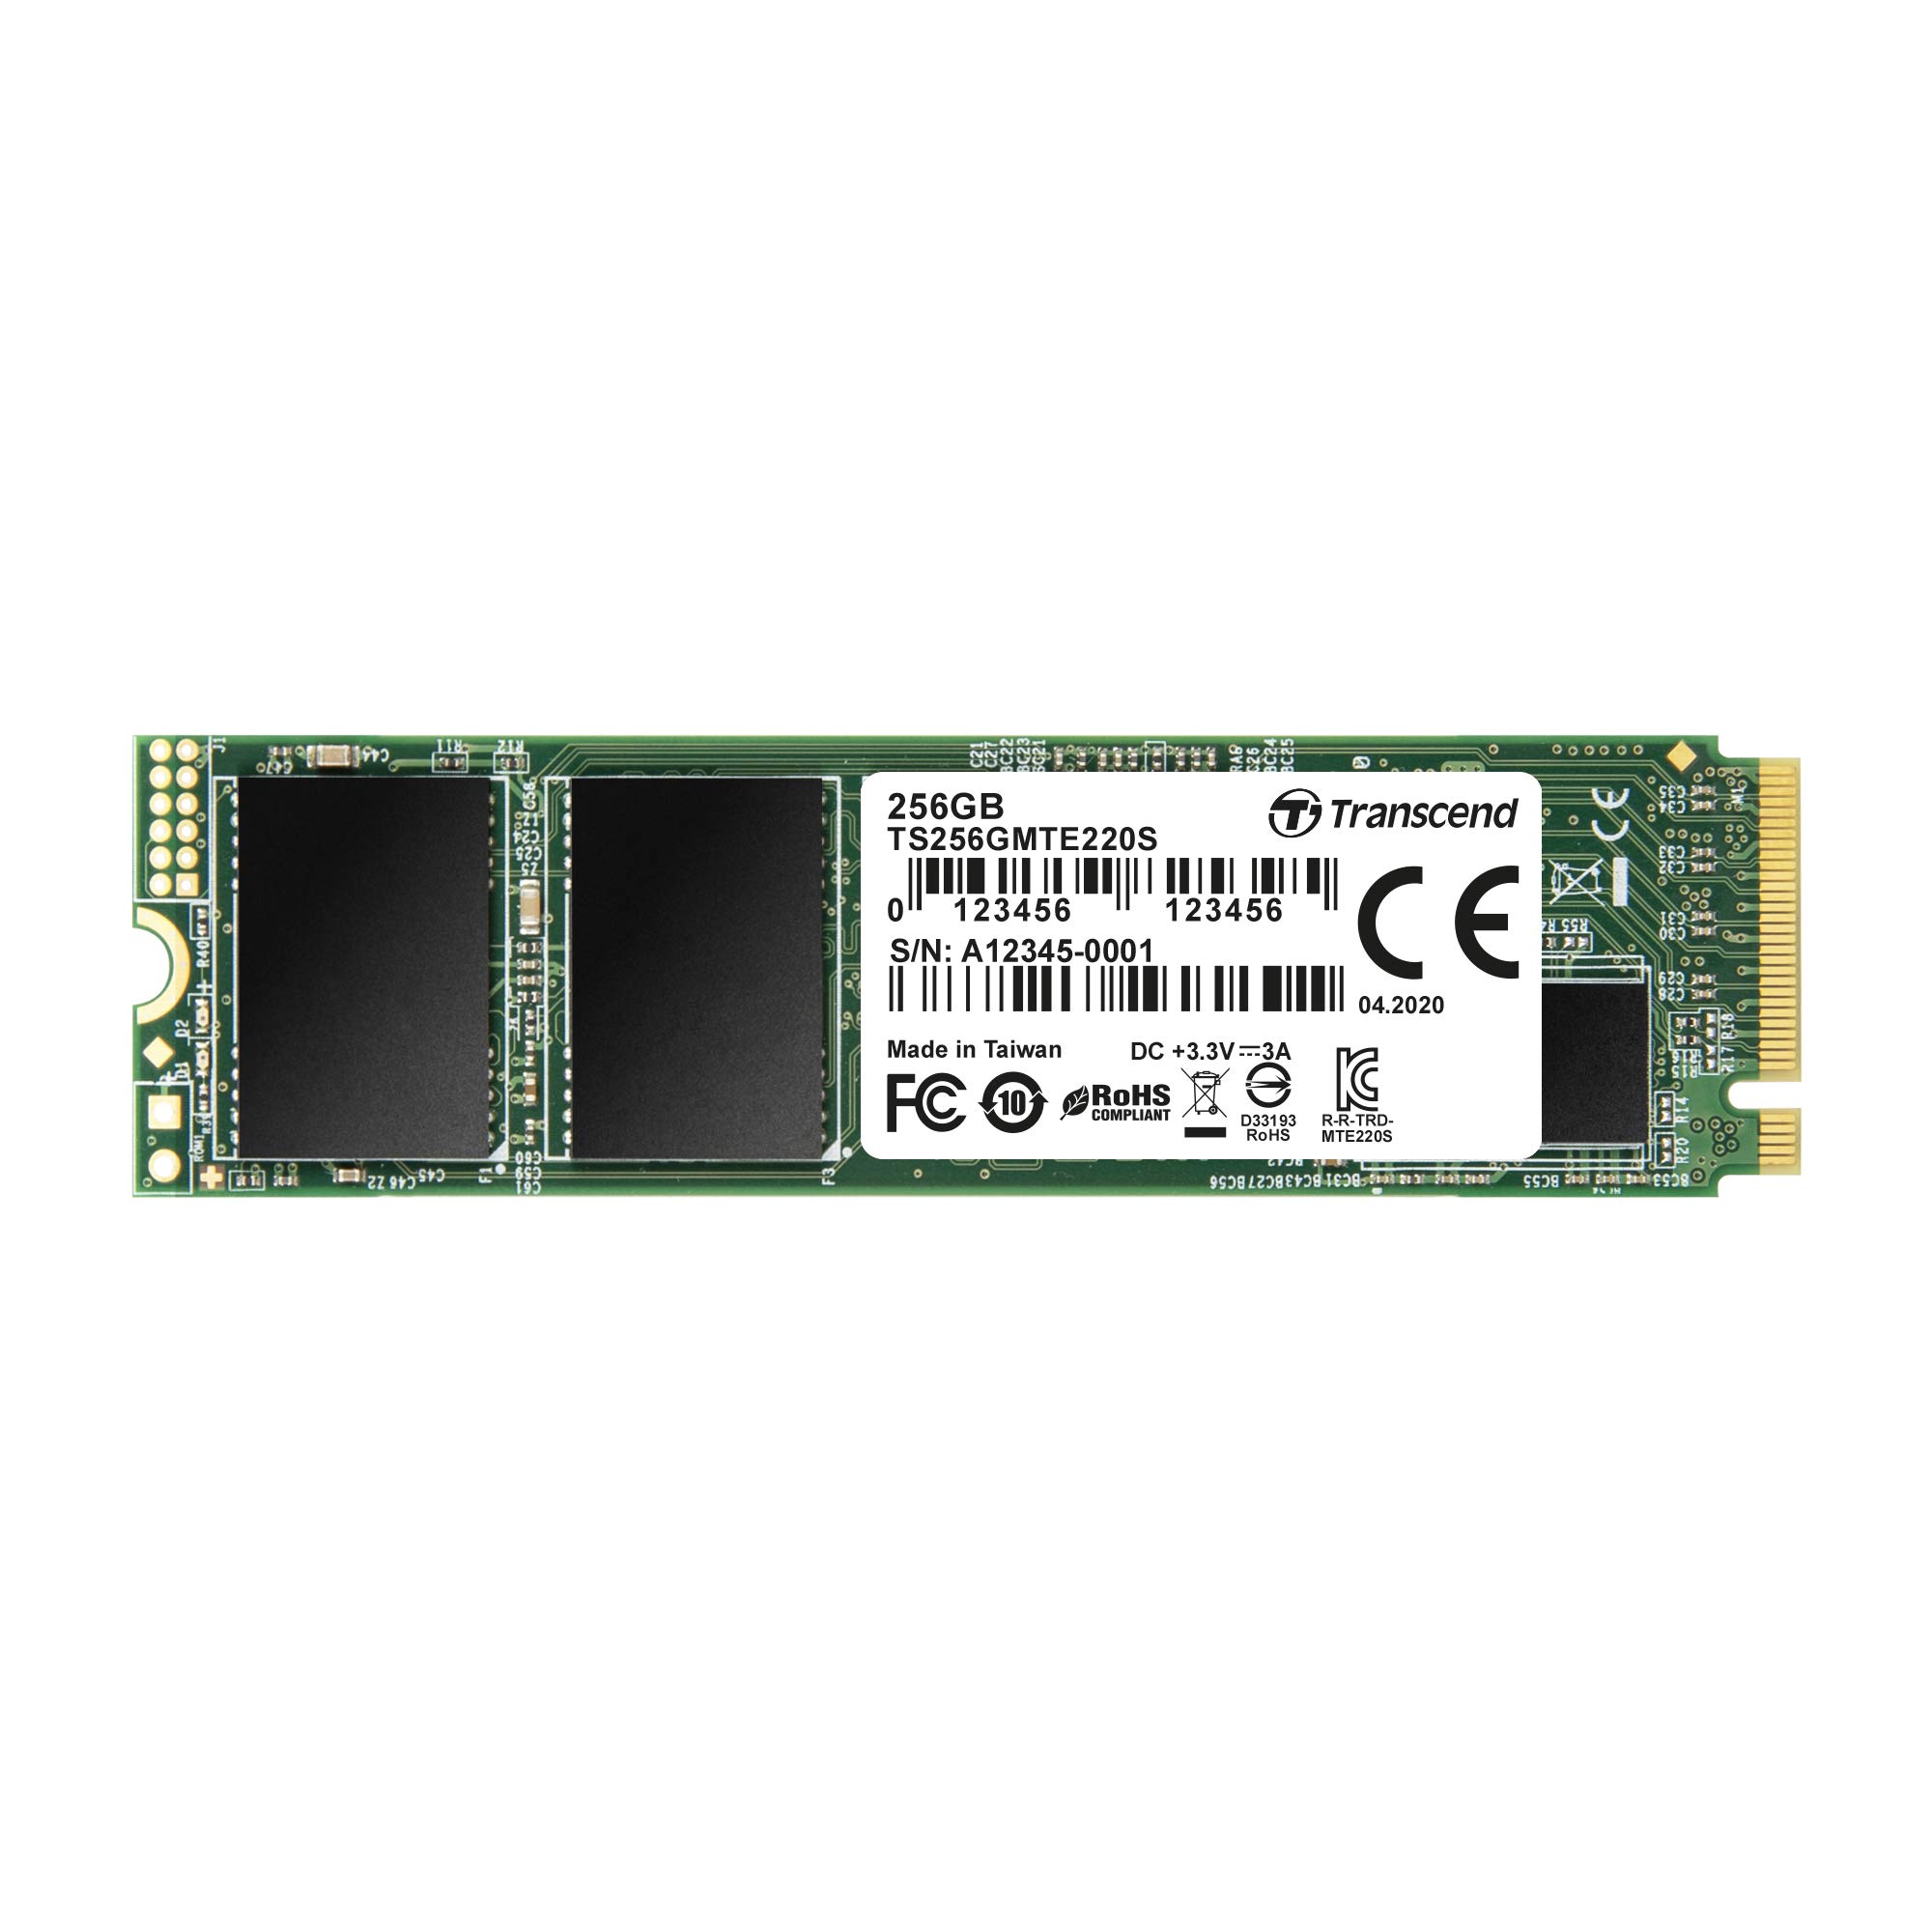 トランセンドジャパン Transcend PCIe M.2 SSD (2280) 256GB NVMe PCIe Gen3 x4 3D TLC採用 DRAMキャッシュ搭載 5年保証 TS256GMTE220S